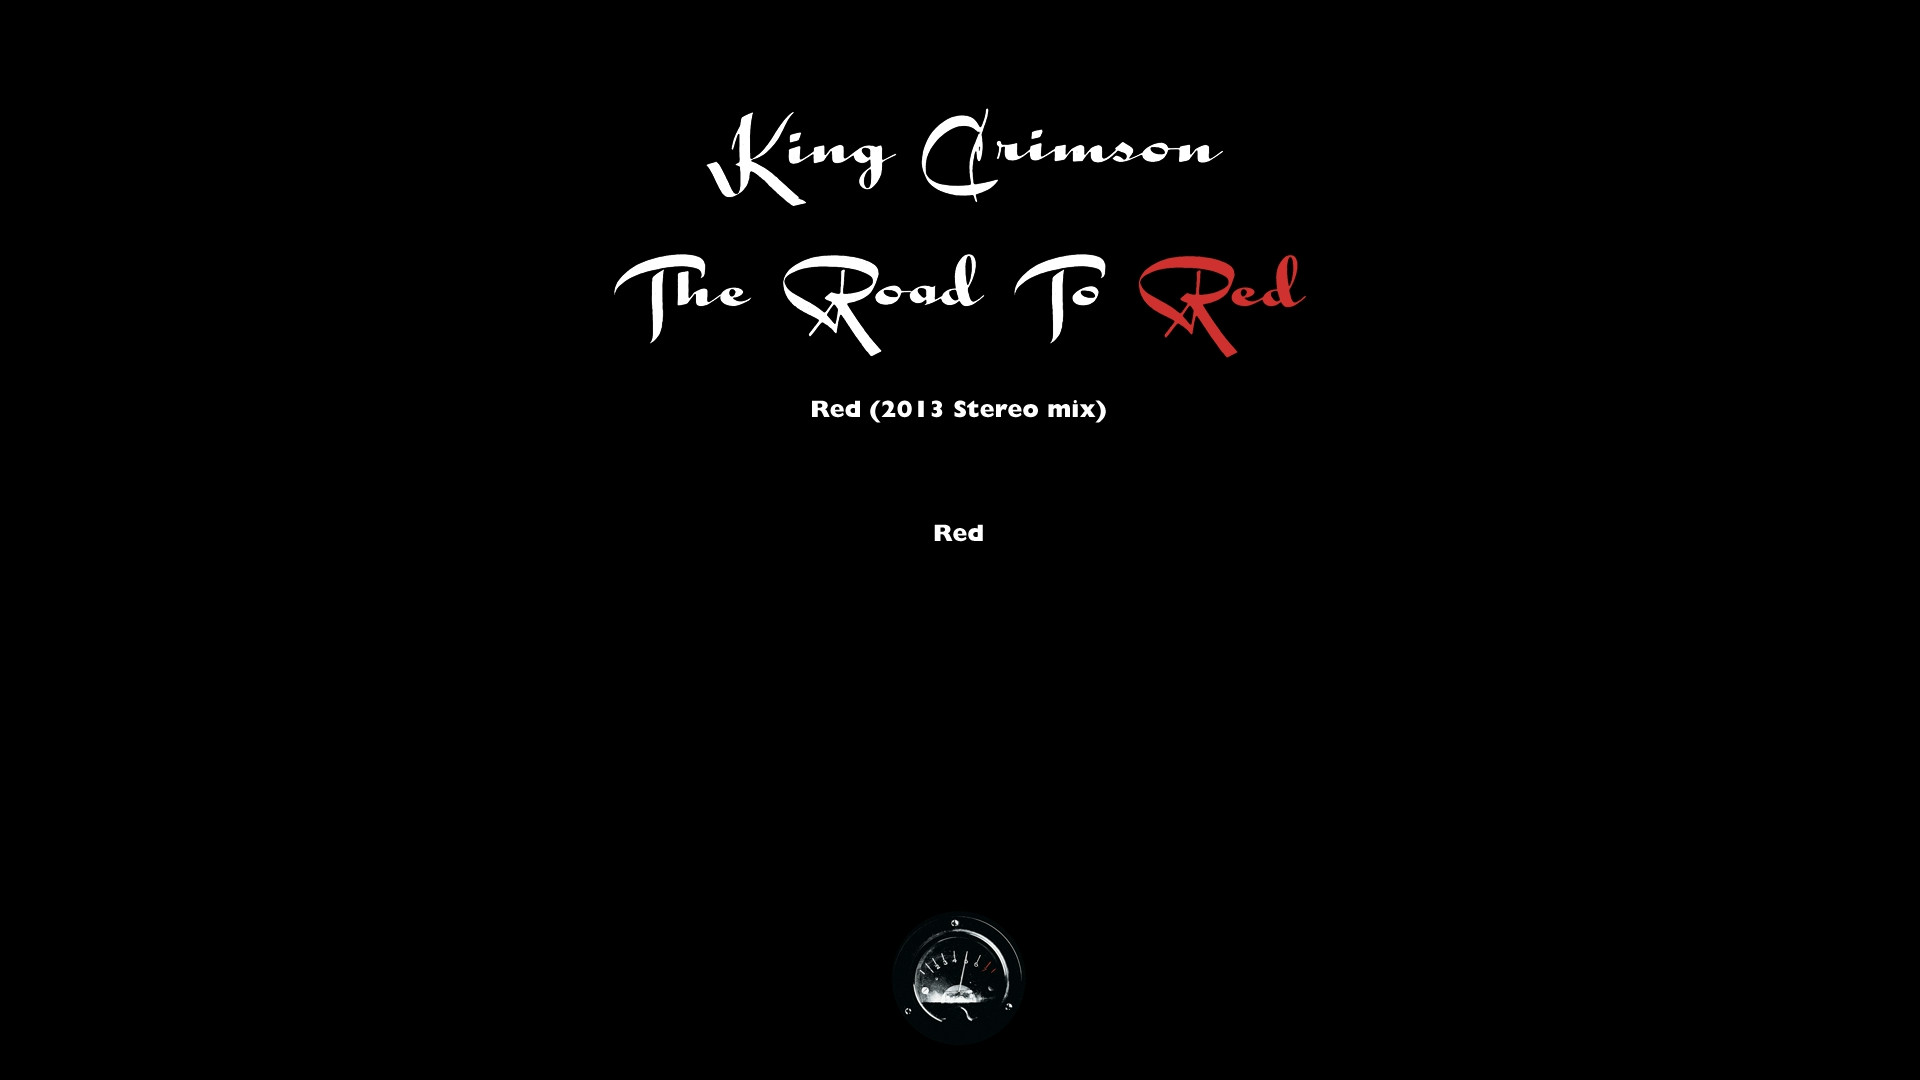 1920x1080 Ð Ð£Ð¢ÐÐ Ð :: King Crimson - The Road To Red (40th Anniversary Limited Edition  Box Set, Disc 23/24) (2013) Blu-Ray Audio 1080p ::: Ð¡ÐºÐ°ÑÐ°ÑÑ ÑÐ¾ÑÑÐµÐ½Ñ